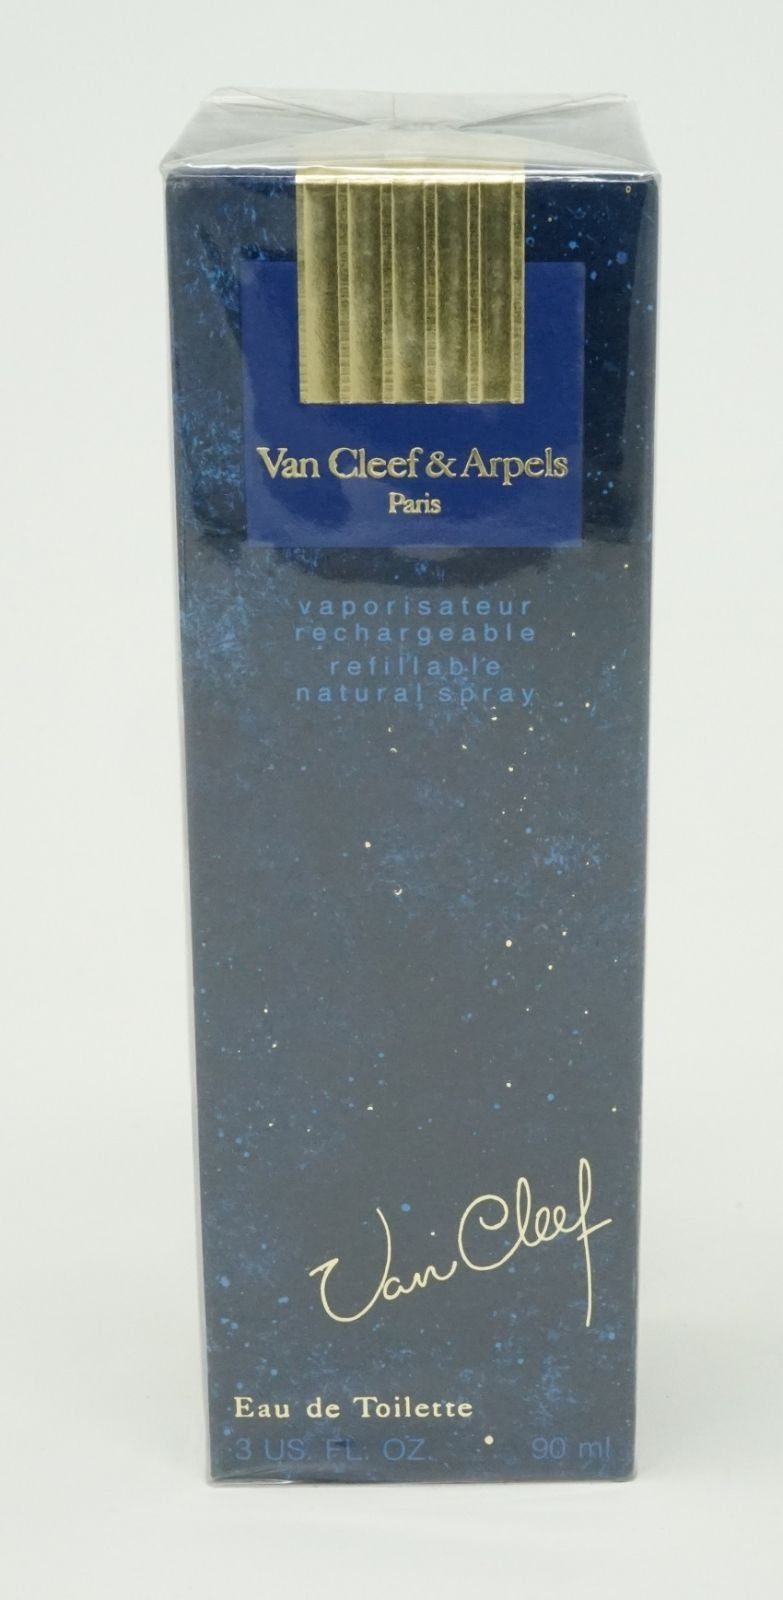 Van Cleef & Arpels Eau de Toilette Van Cleef & Arpels Van Cleef Eau de Toilette Natural Spray Refill 90ml